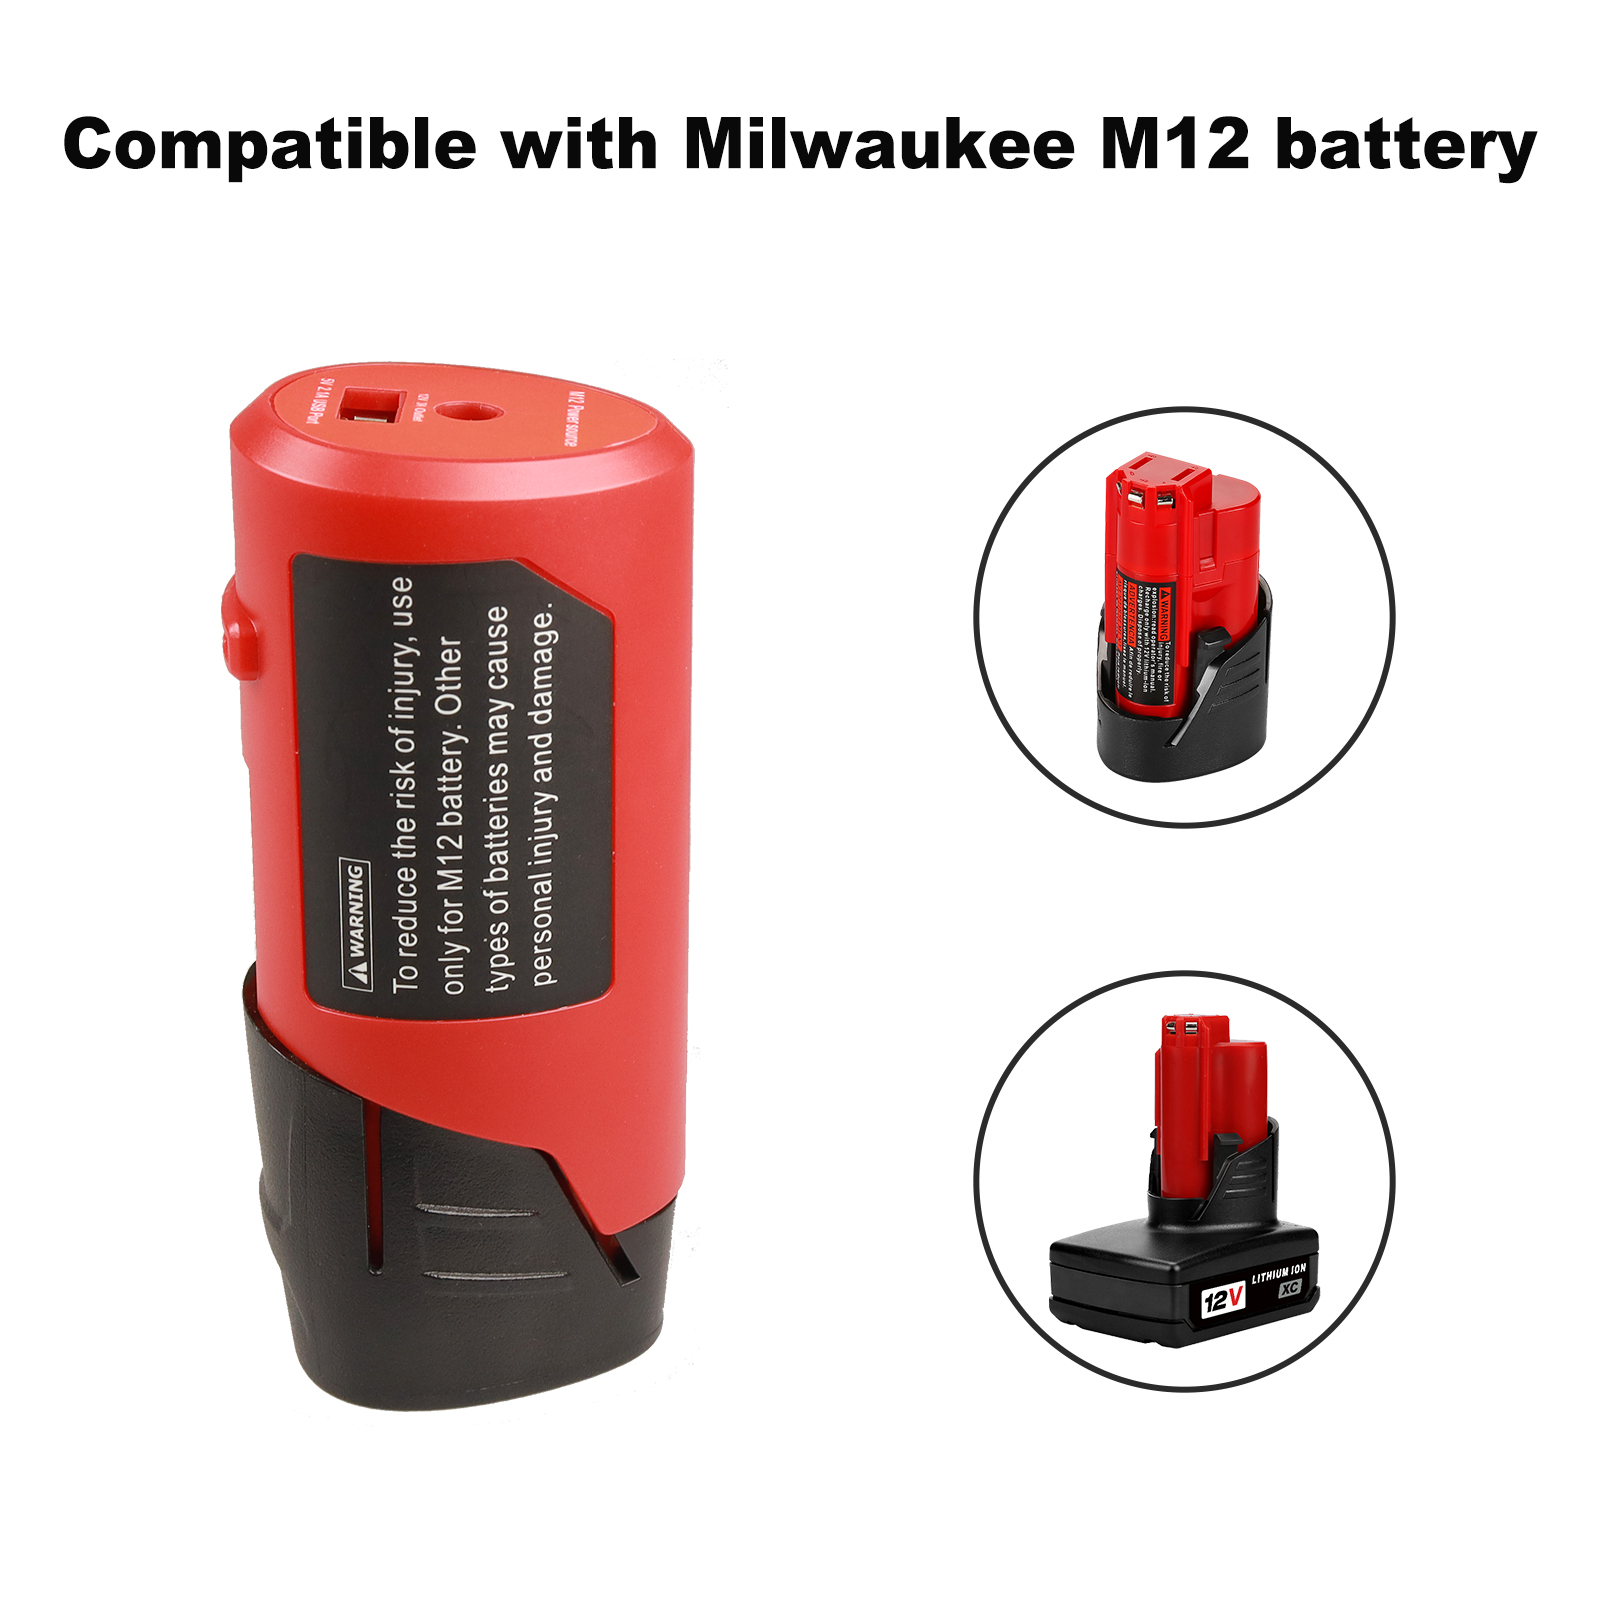 Adapter ea Mohloli oa Matla a USB bakeng sa Battery ea Lithium-ion ea Milwaukee M12 12V